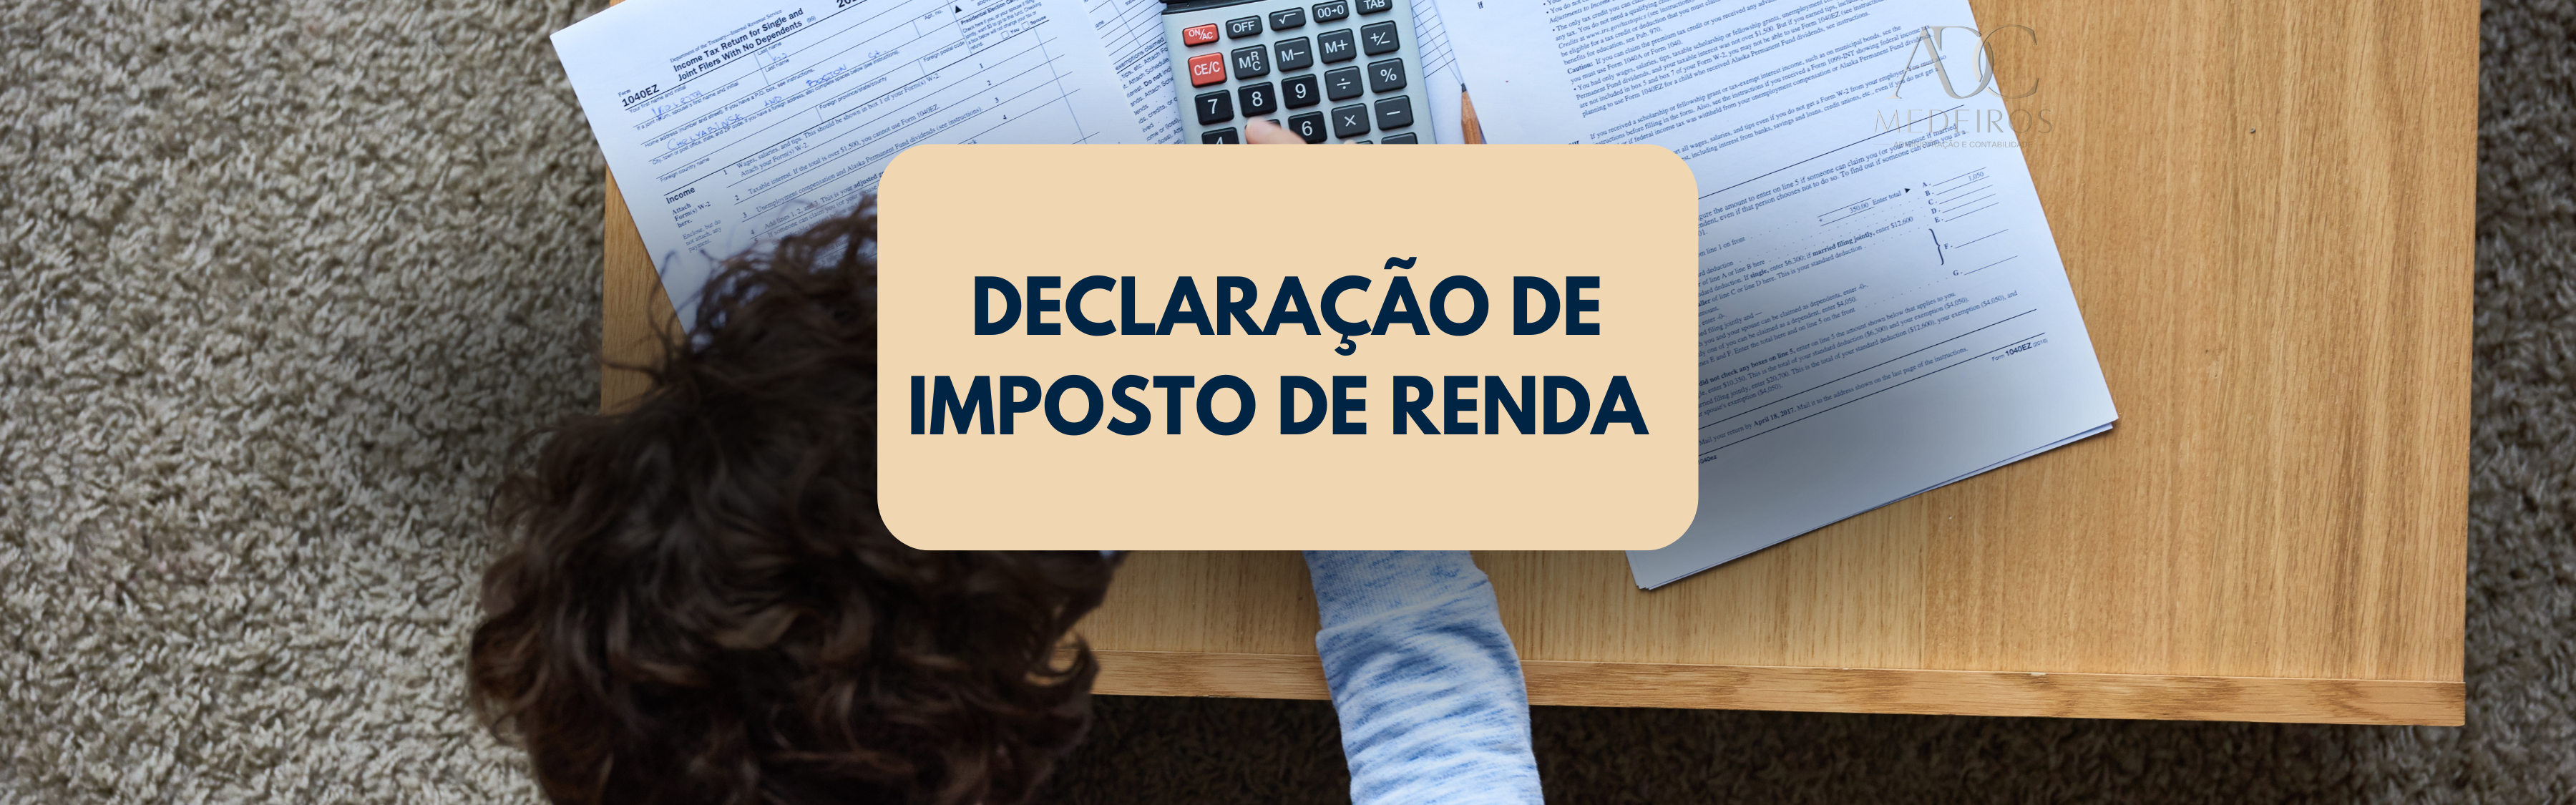 Declaração de Imposto de Renda em Macaé – RJ